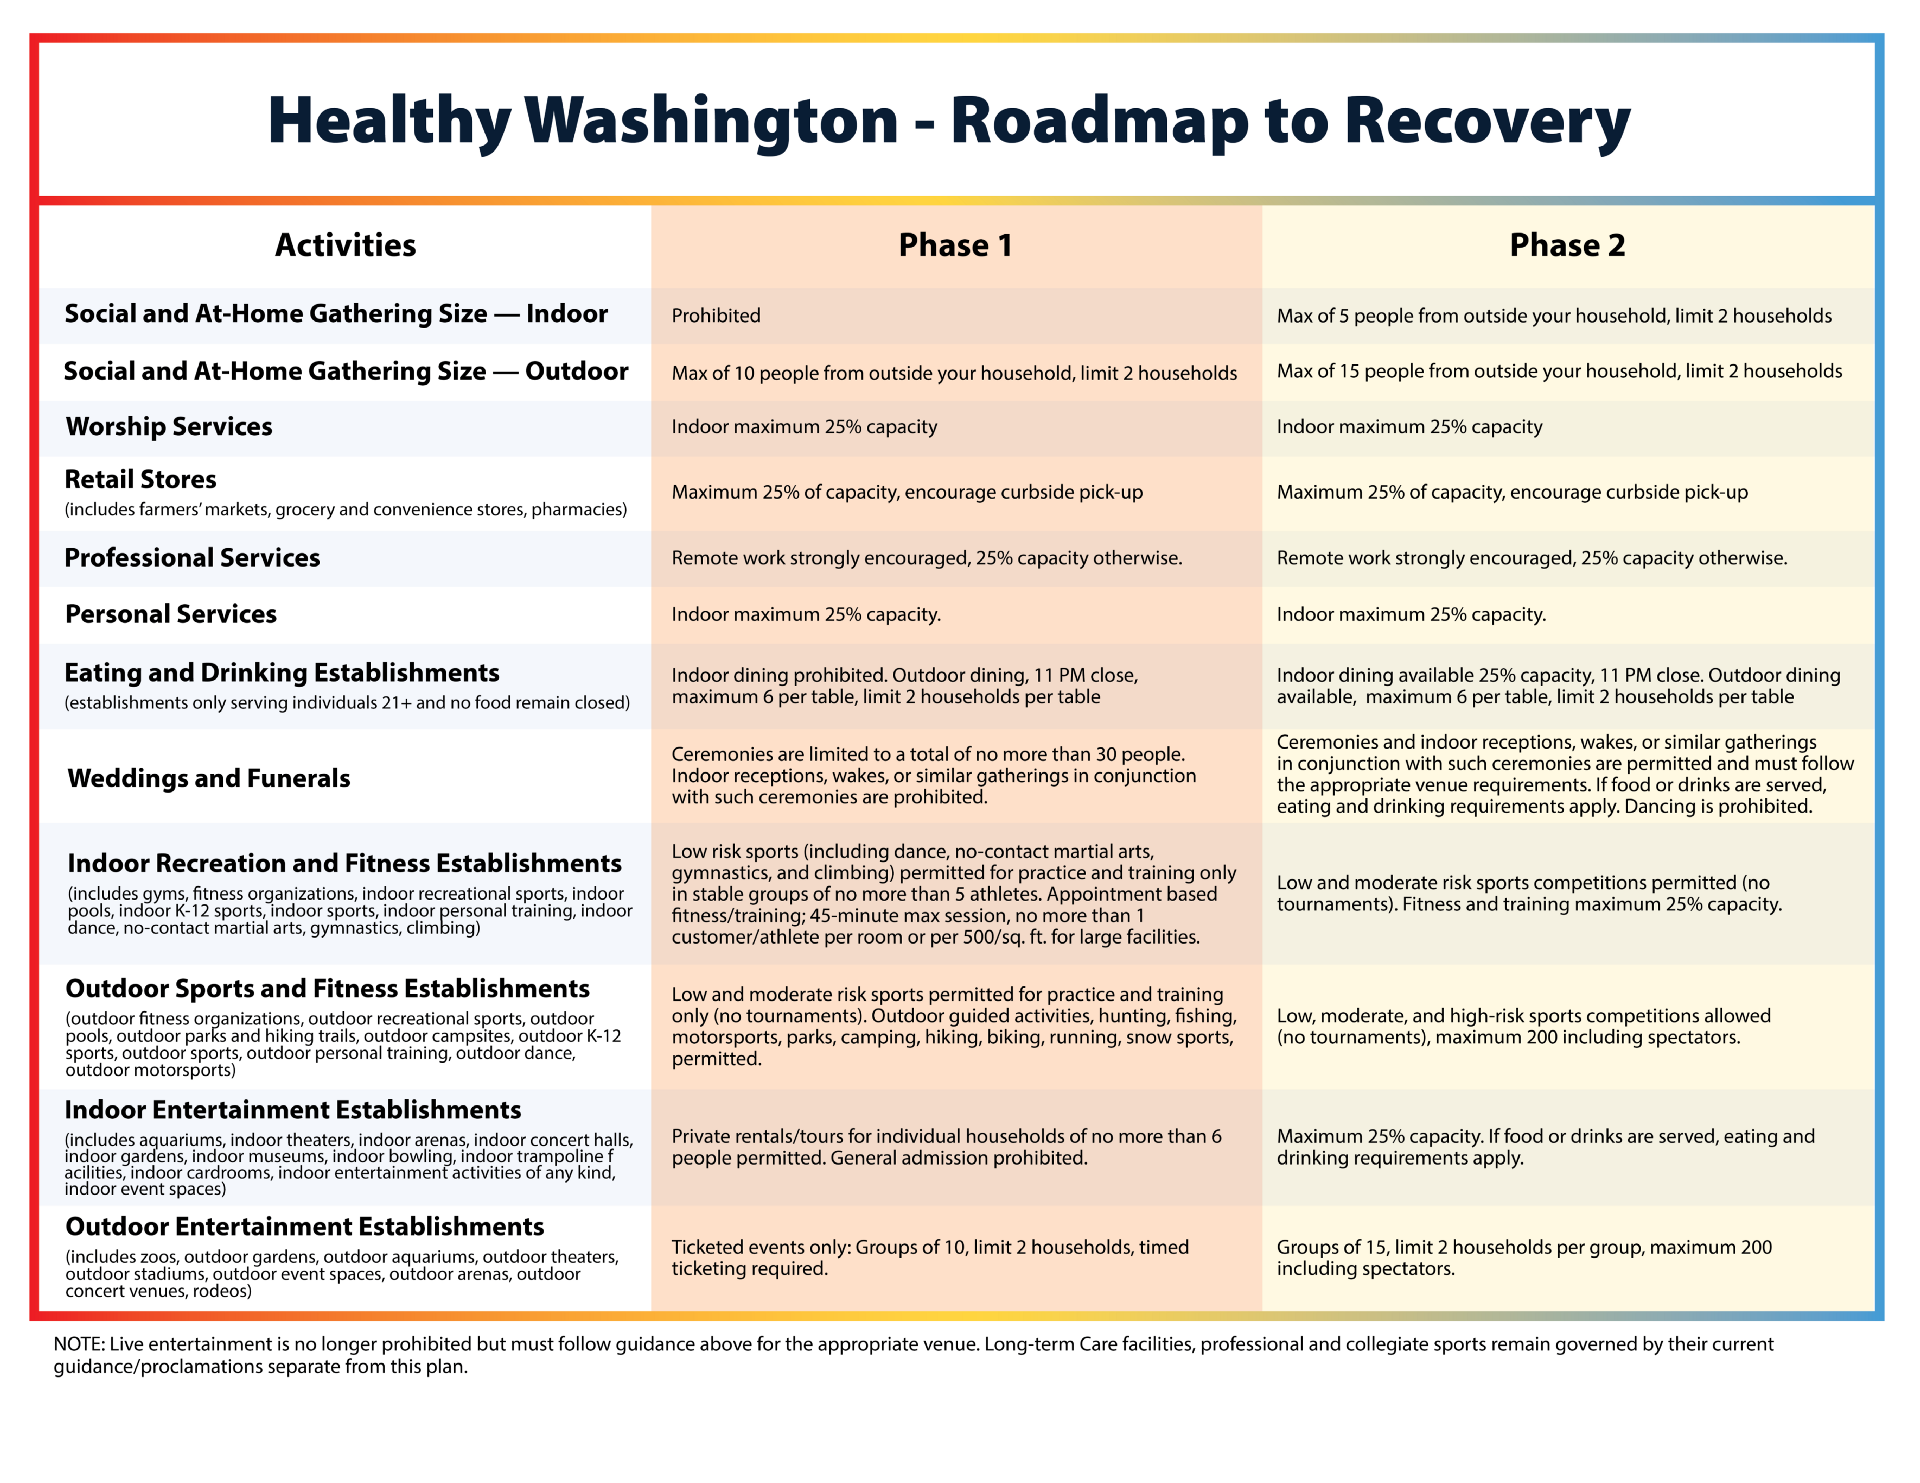 Healthy Washington Roadmap to Recovery